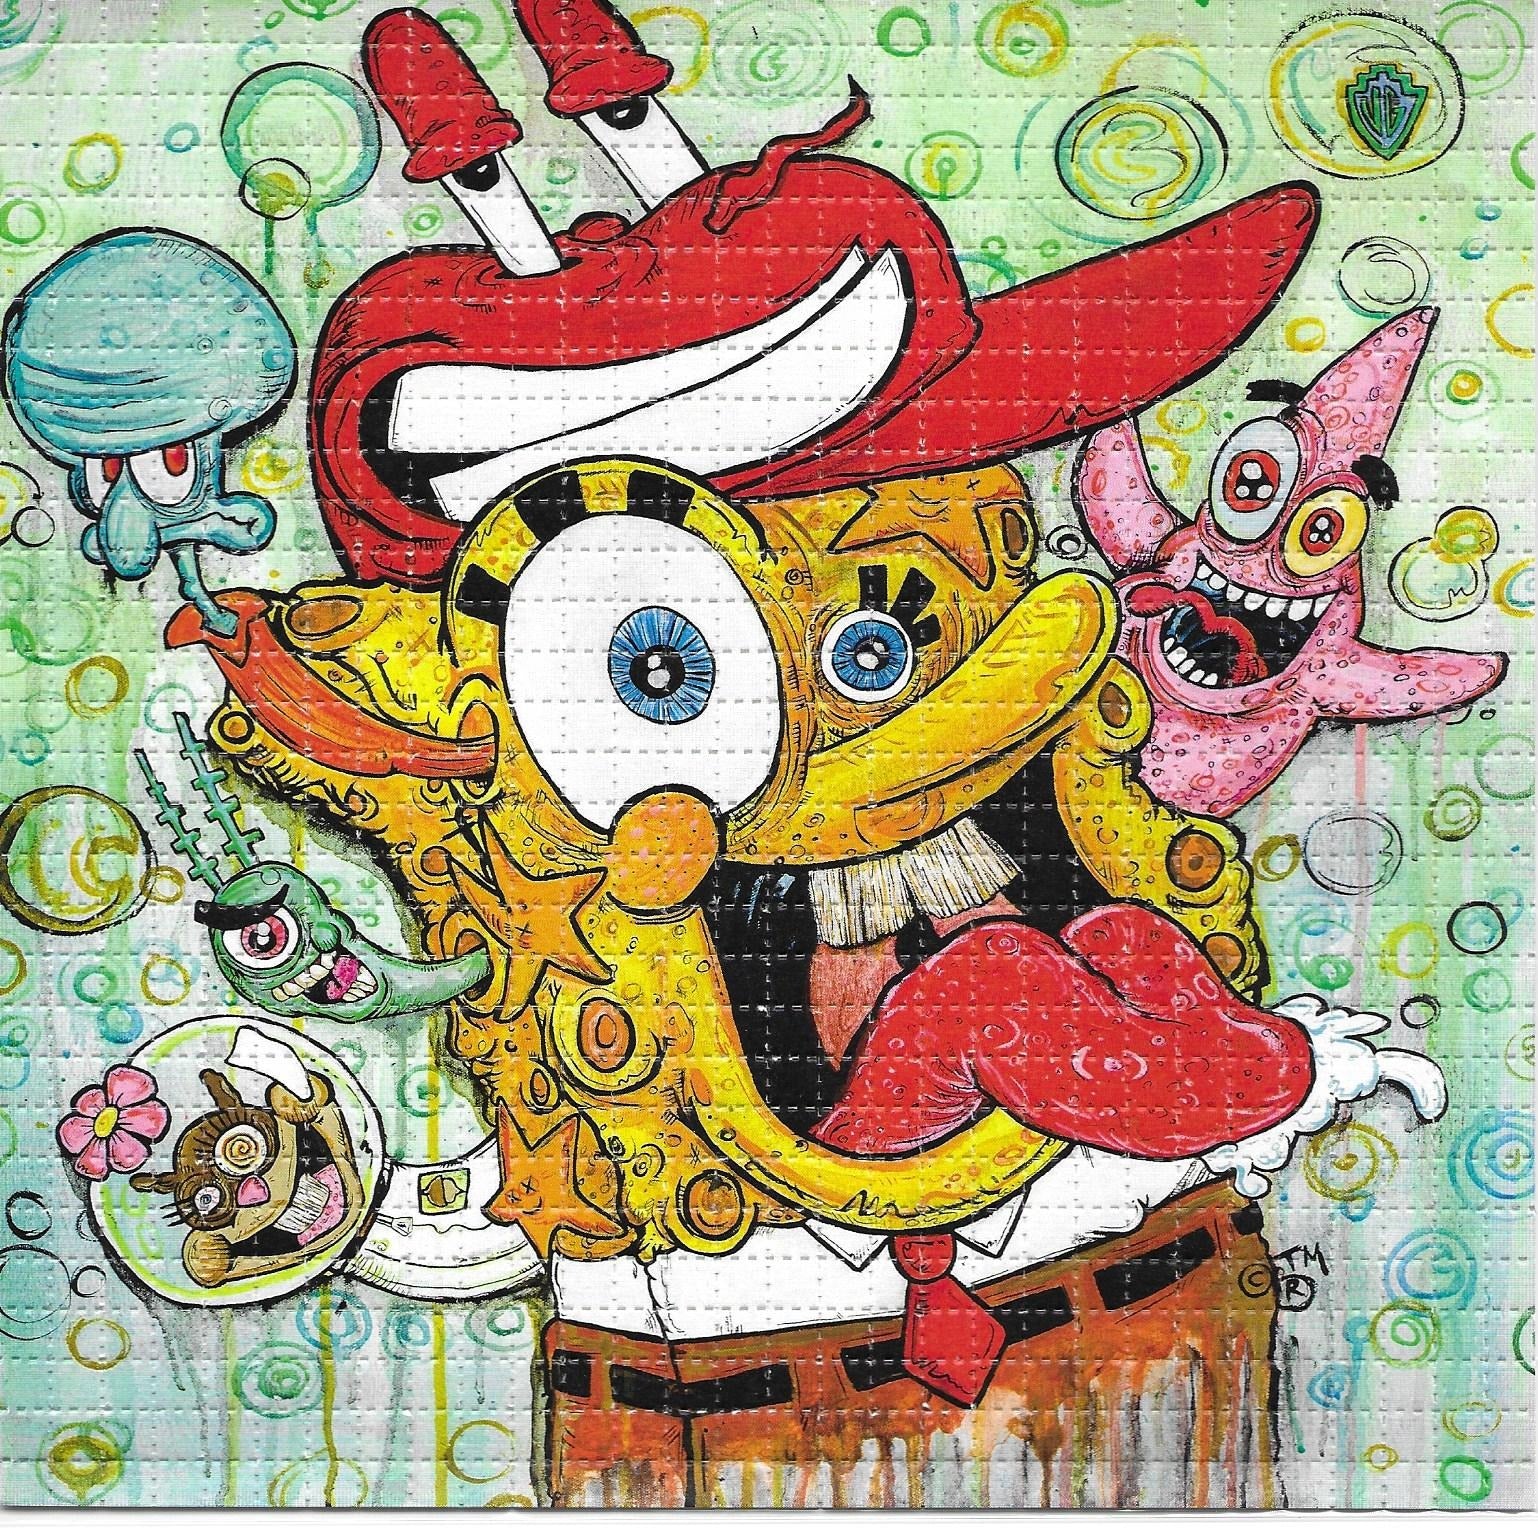 spongebob lsd blotter